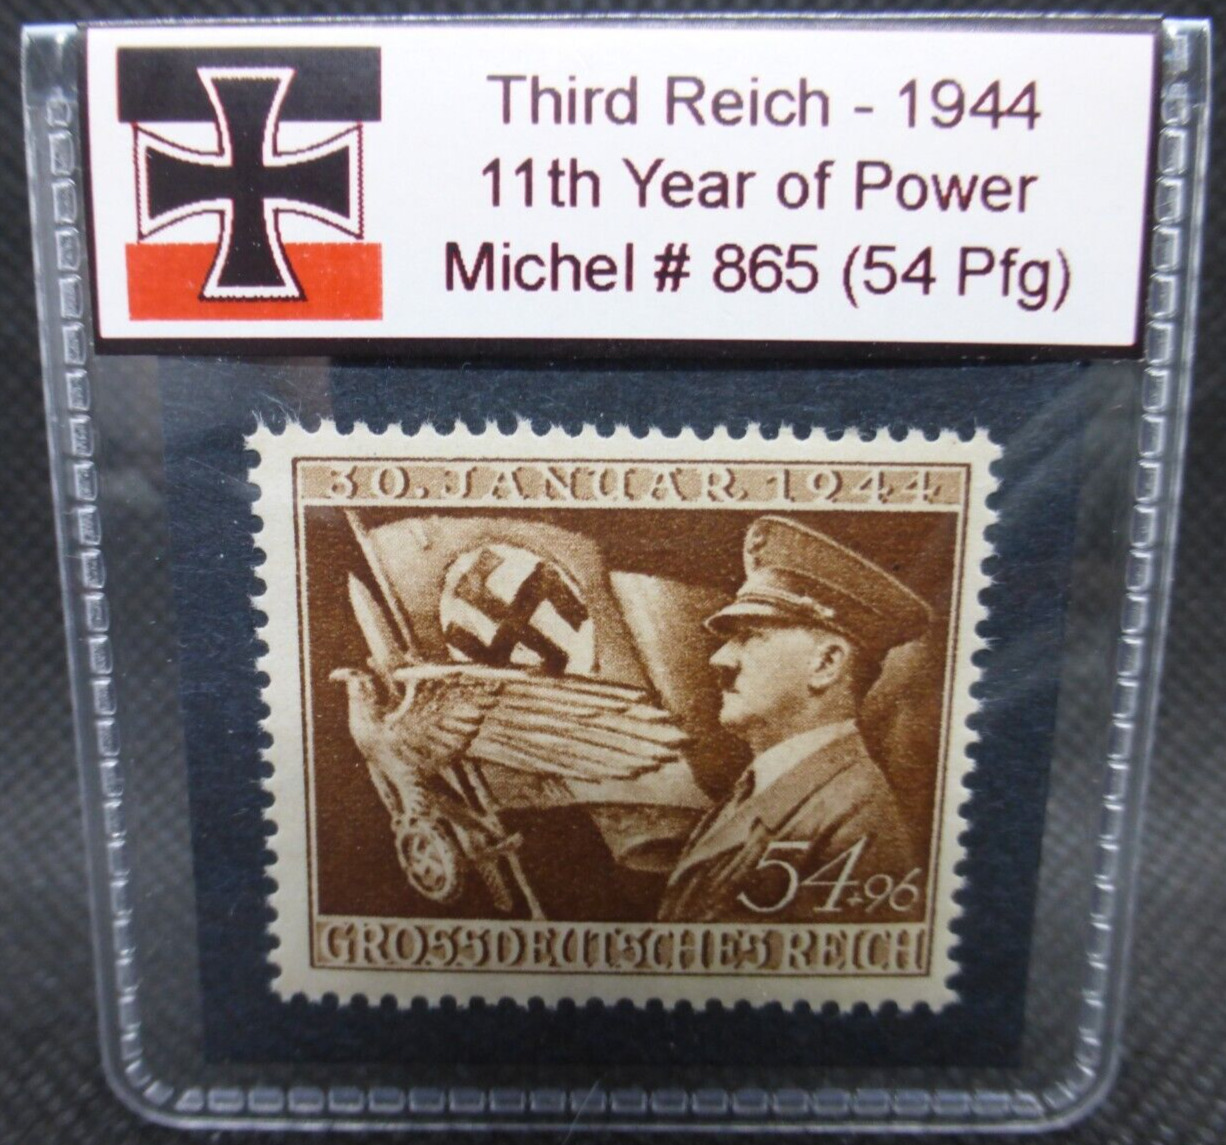 Nazi Germany WW2 1944 Stamp 11th Year of Power Third Reich Reichspfennig Rare